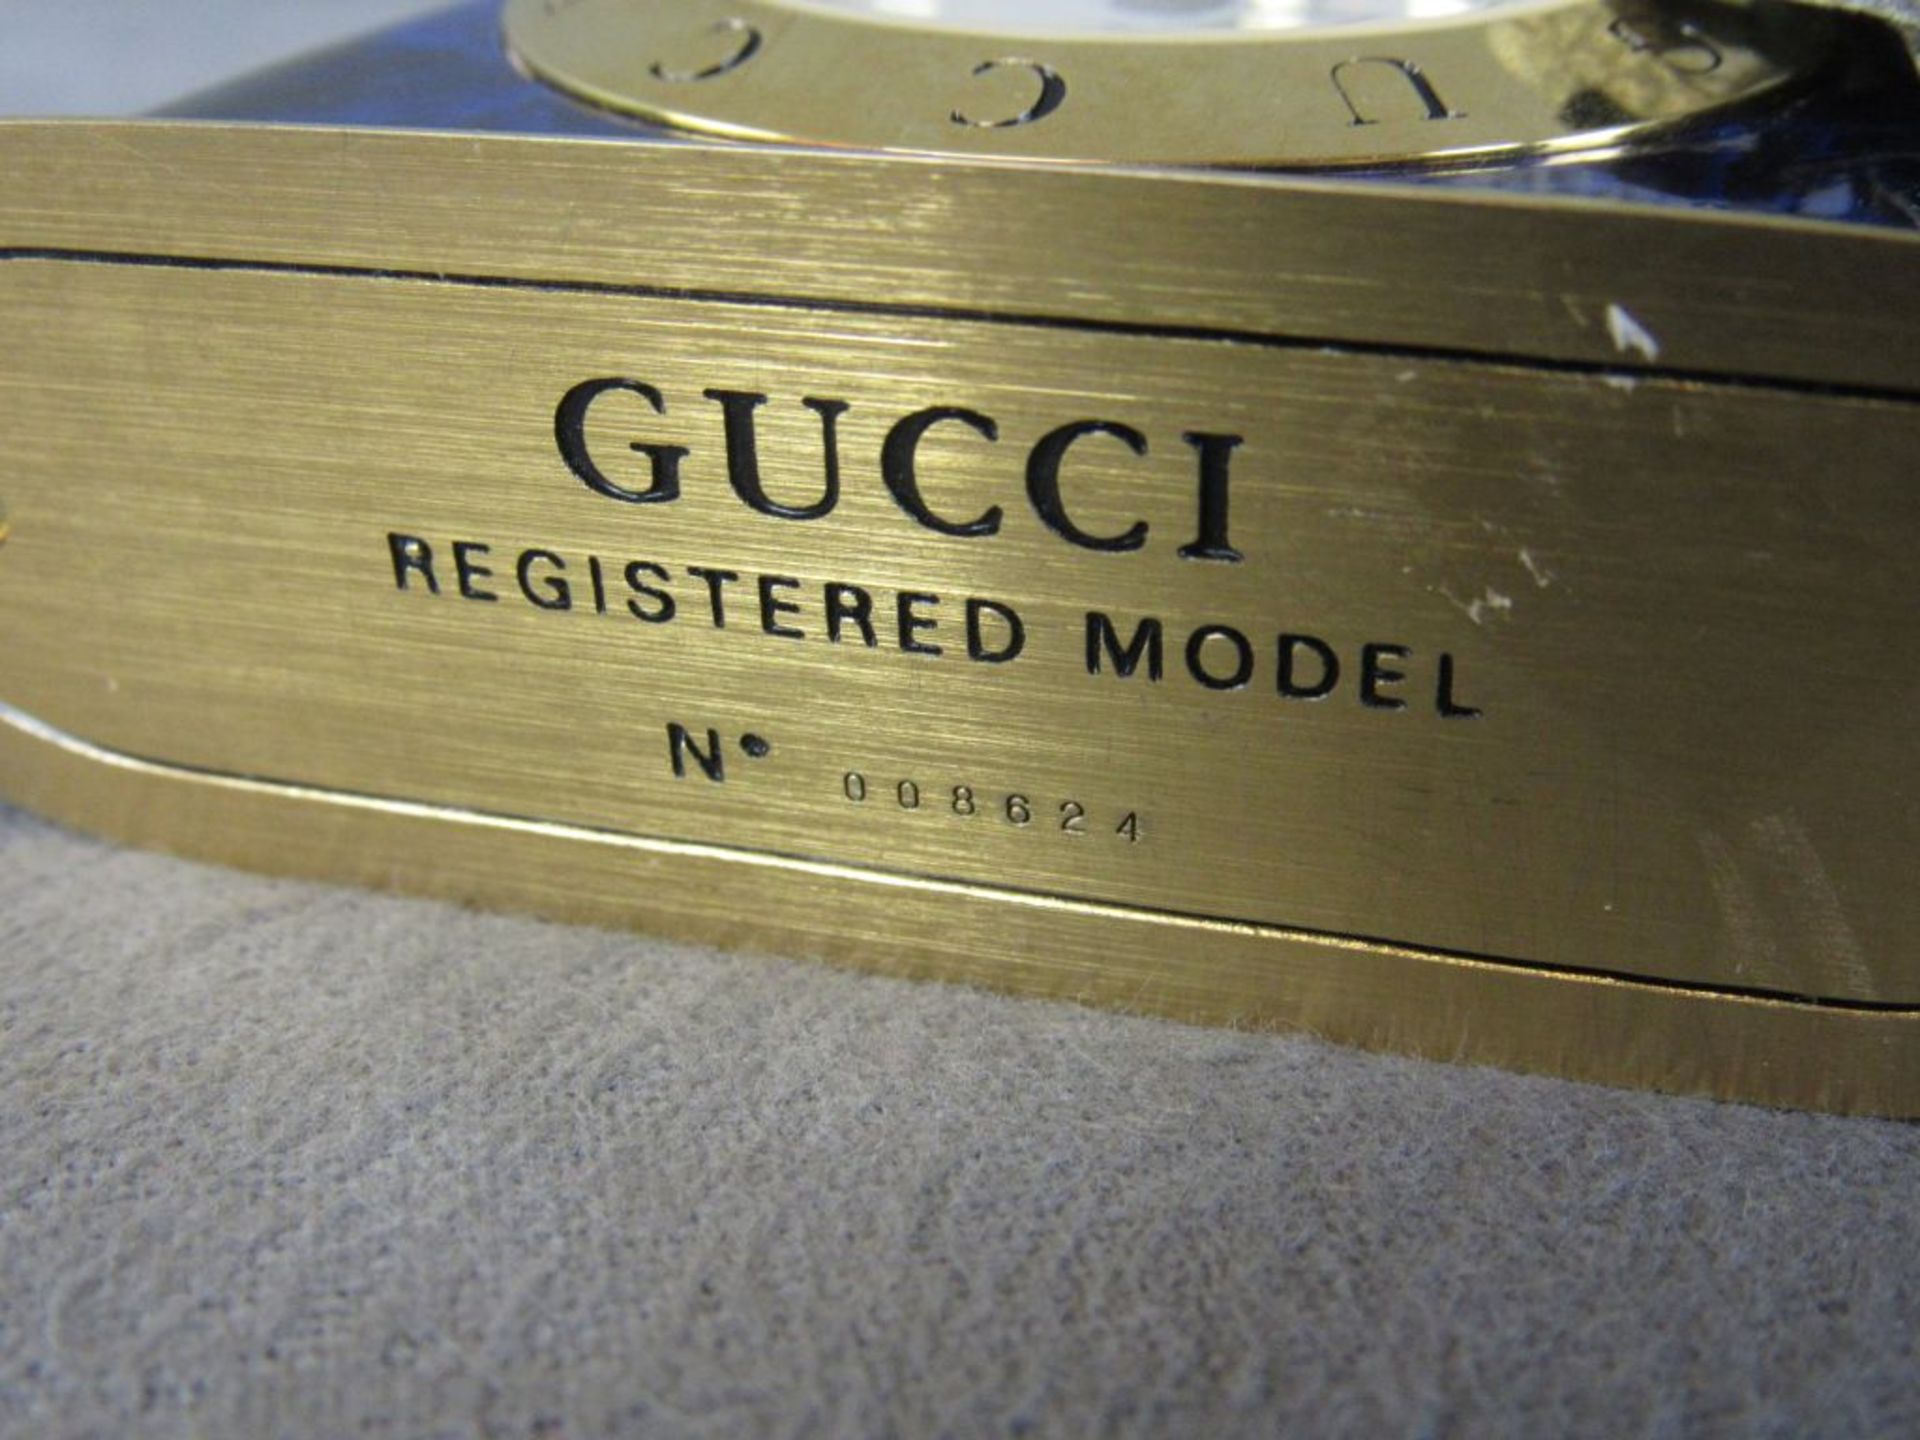 Kleine Reiseuhr Designeruhr Gucci original mit Modellnummer Höhe:8,5cm Breite:10cm - Image 5 of 6